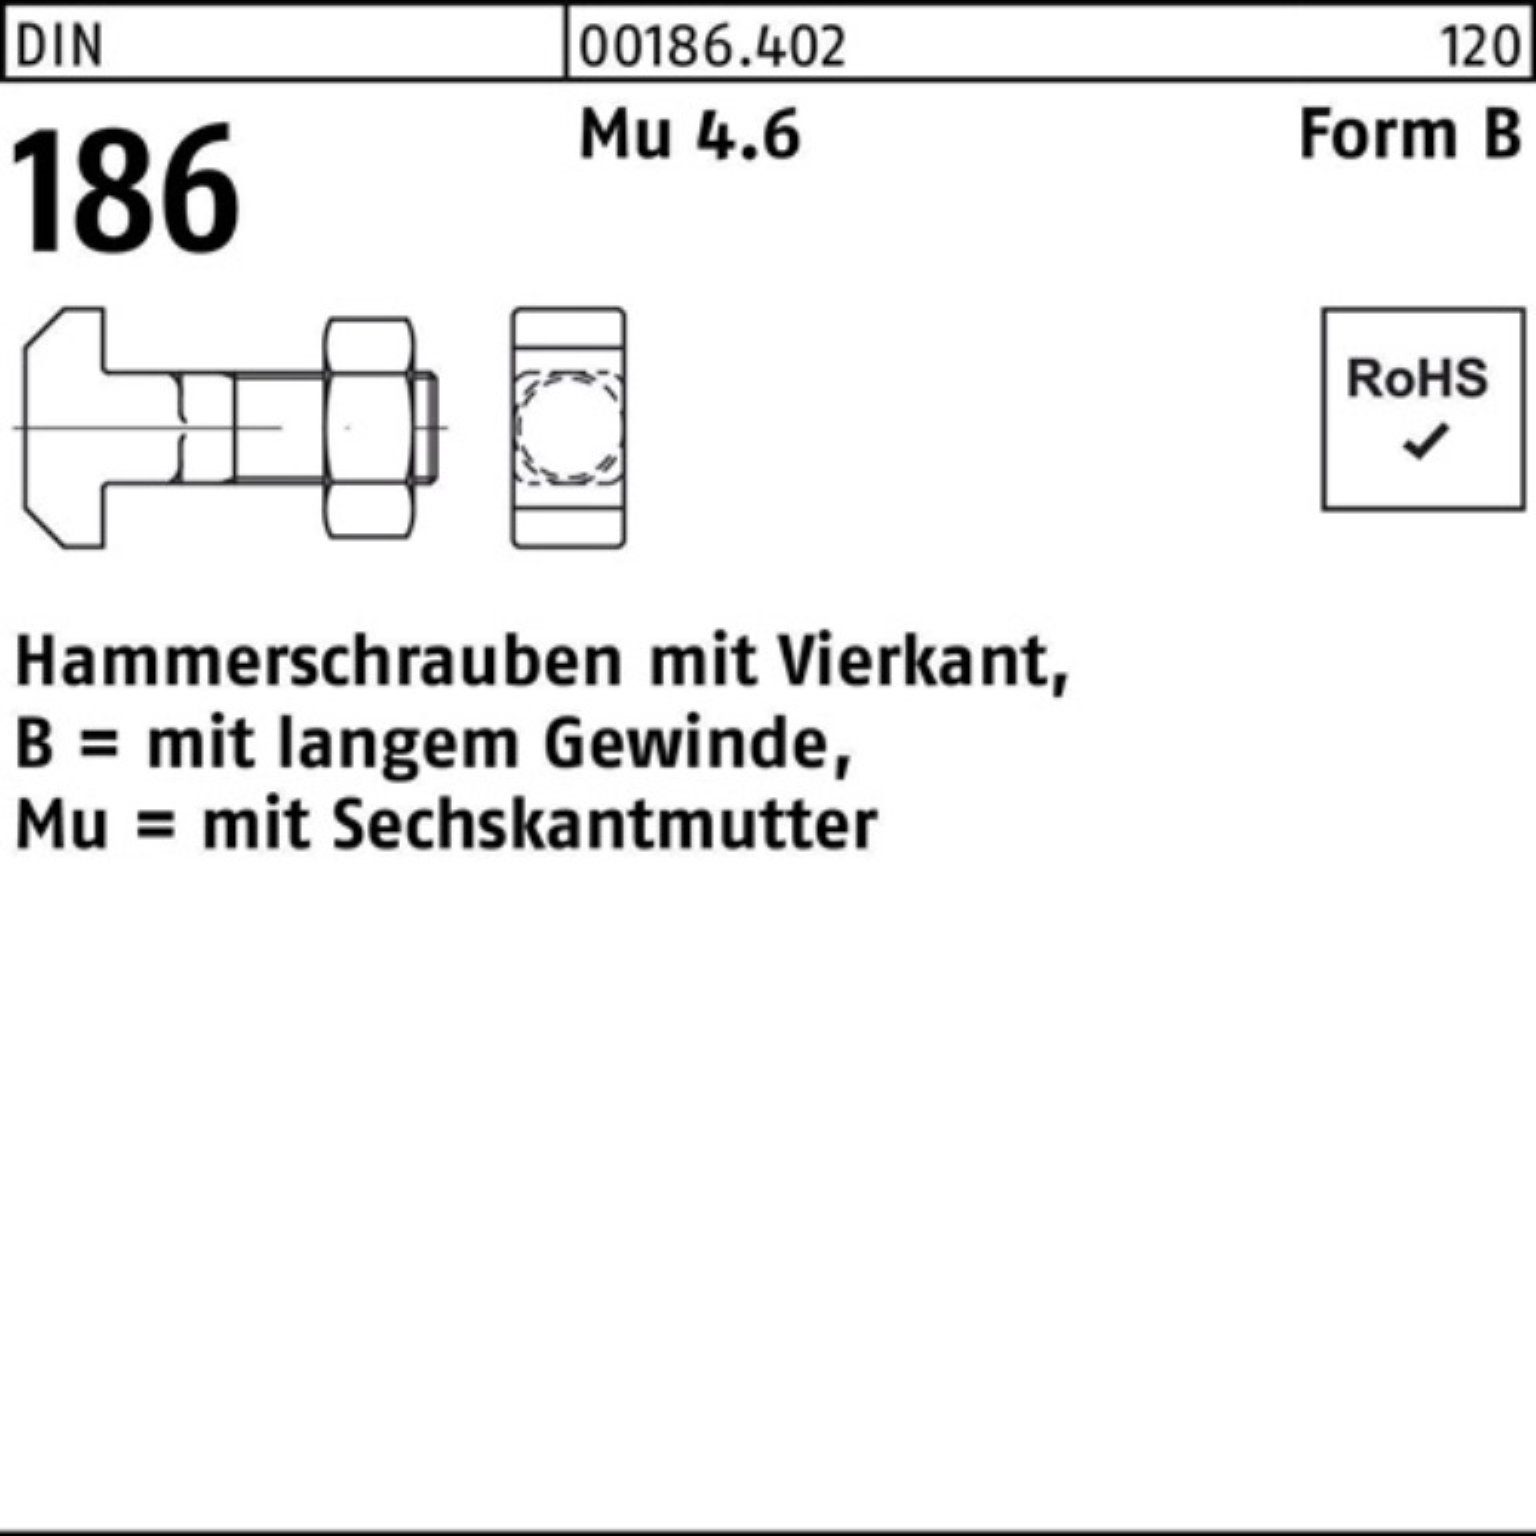 FormB 100er Schraube Reyher 16x BM Vierkant 186 Hammerschraube 6-ktmutter DIN 60 Pack